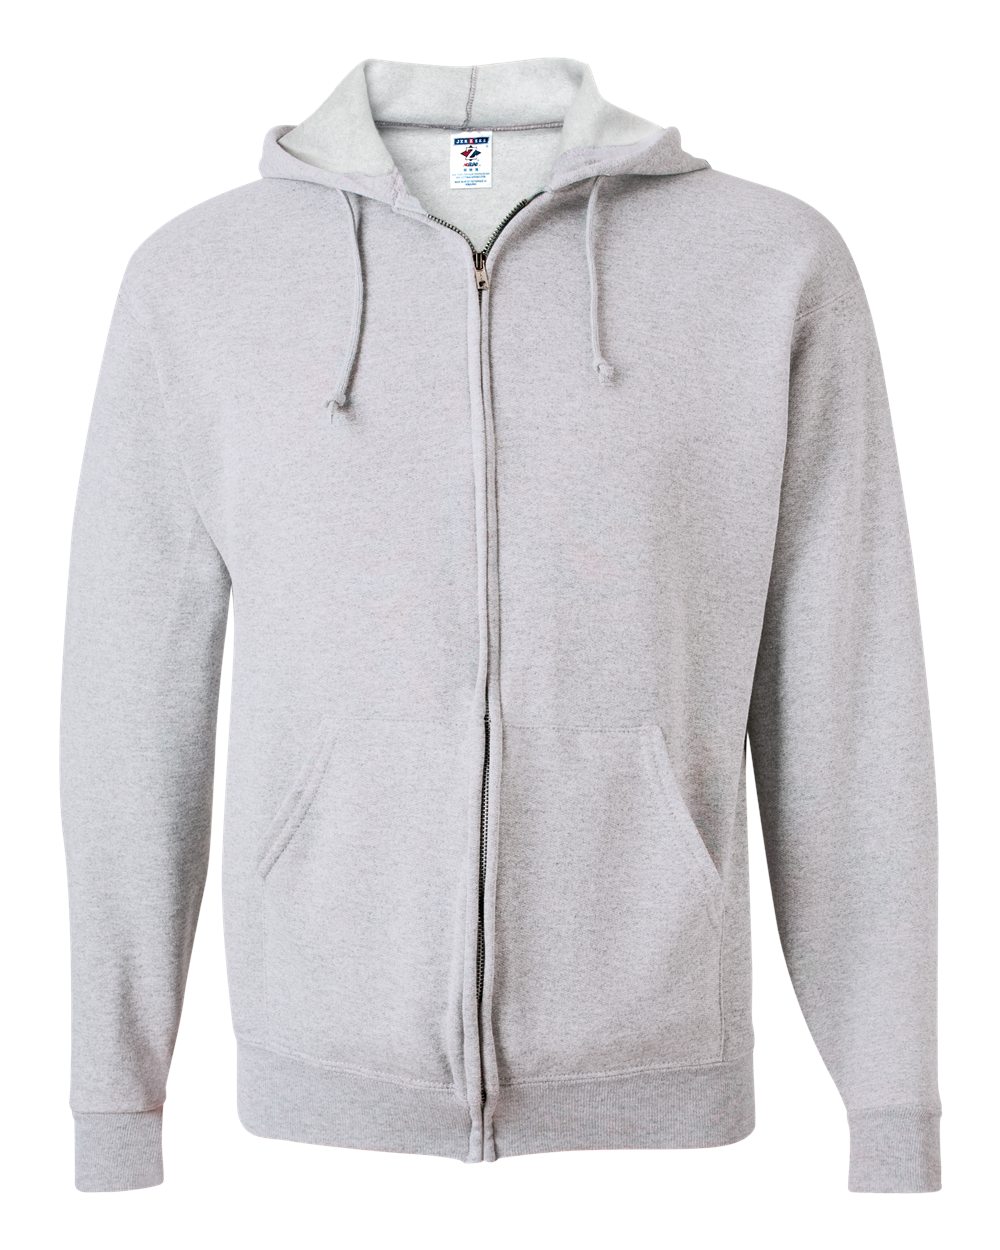 JERZEES&#xAE; NuBlend Full-Zip Hooded Sweatshirt